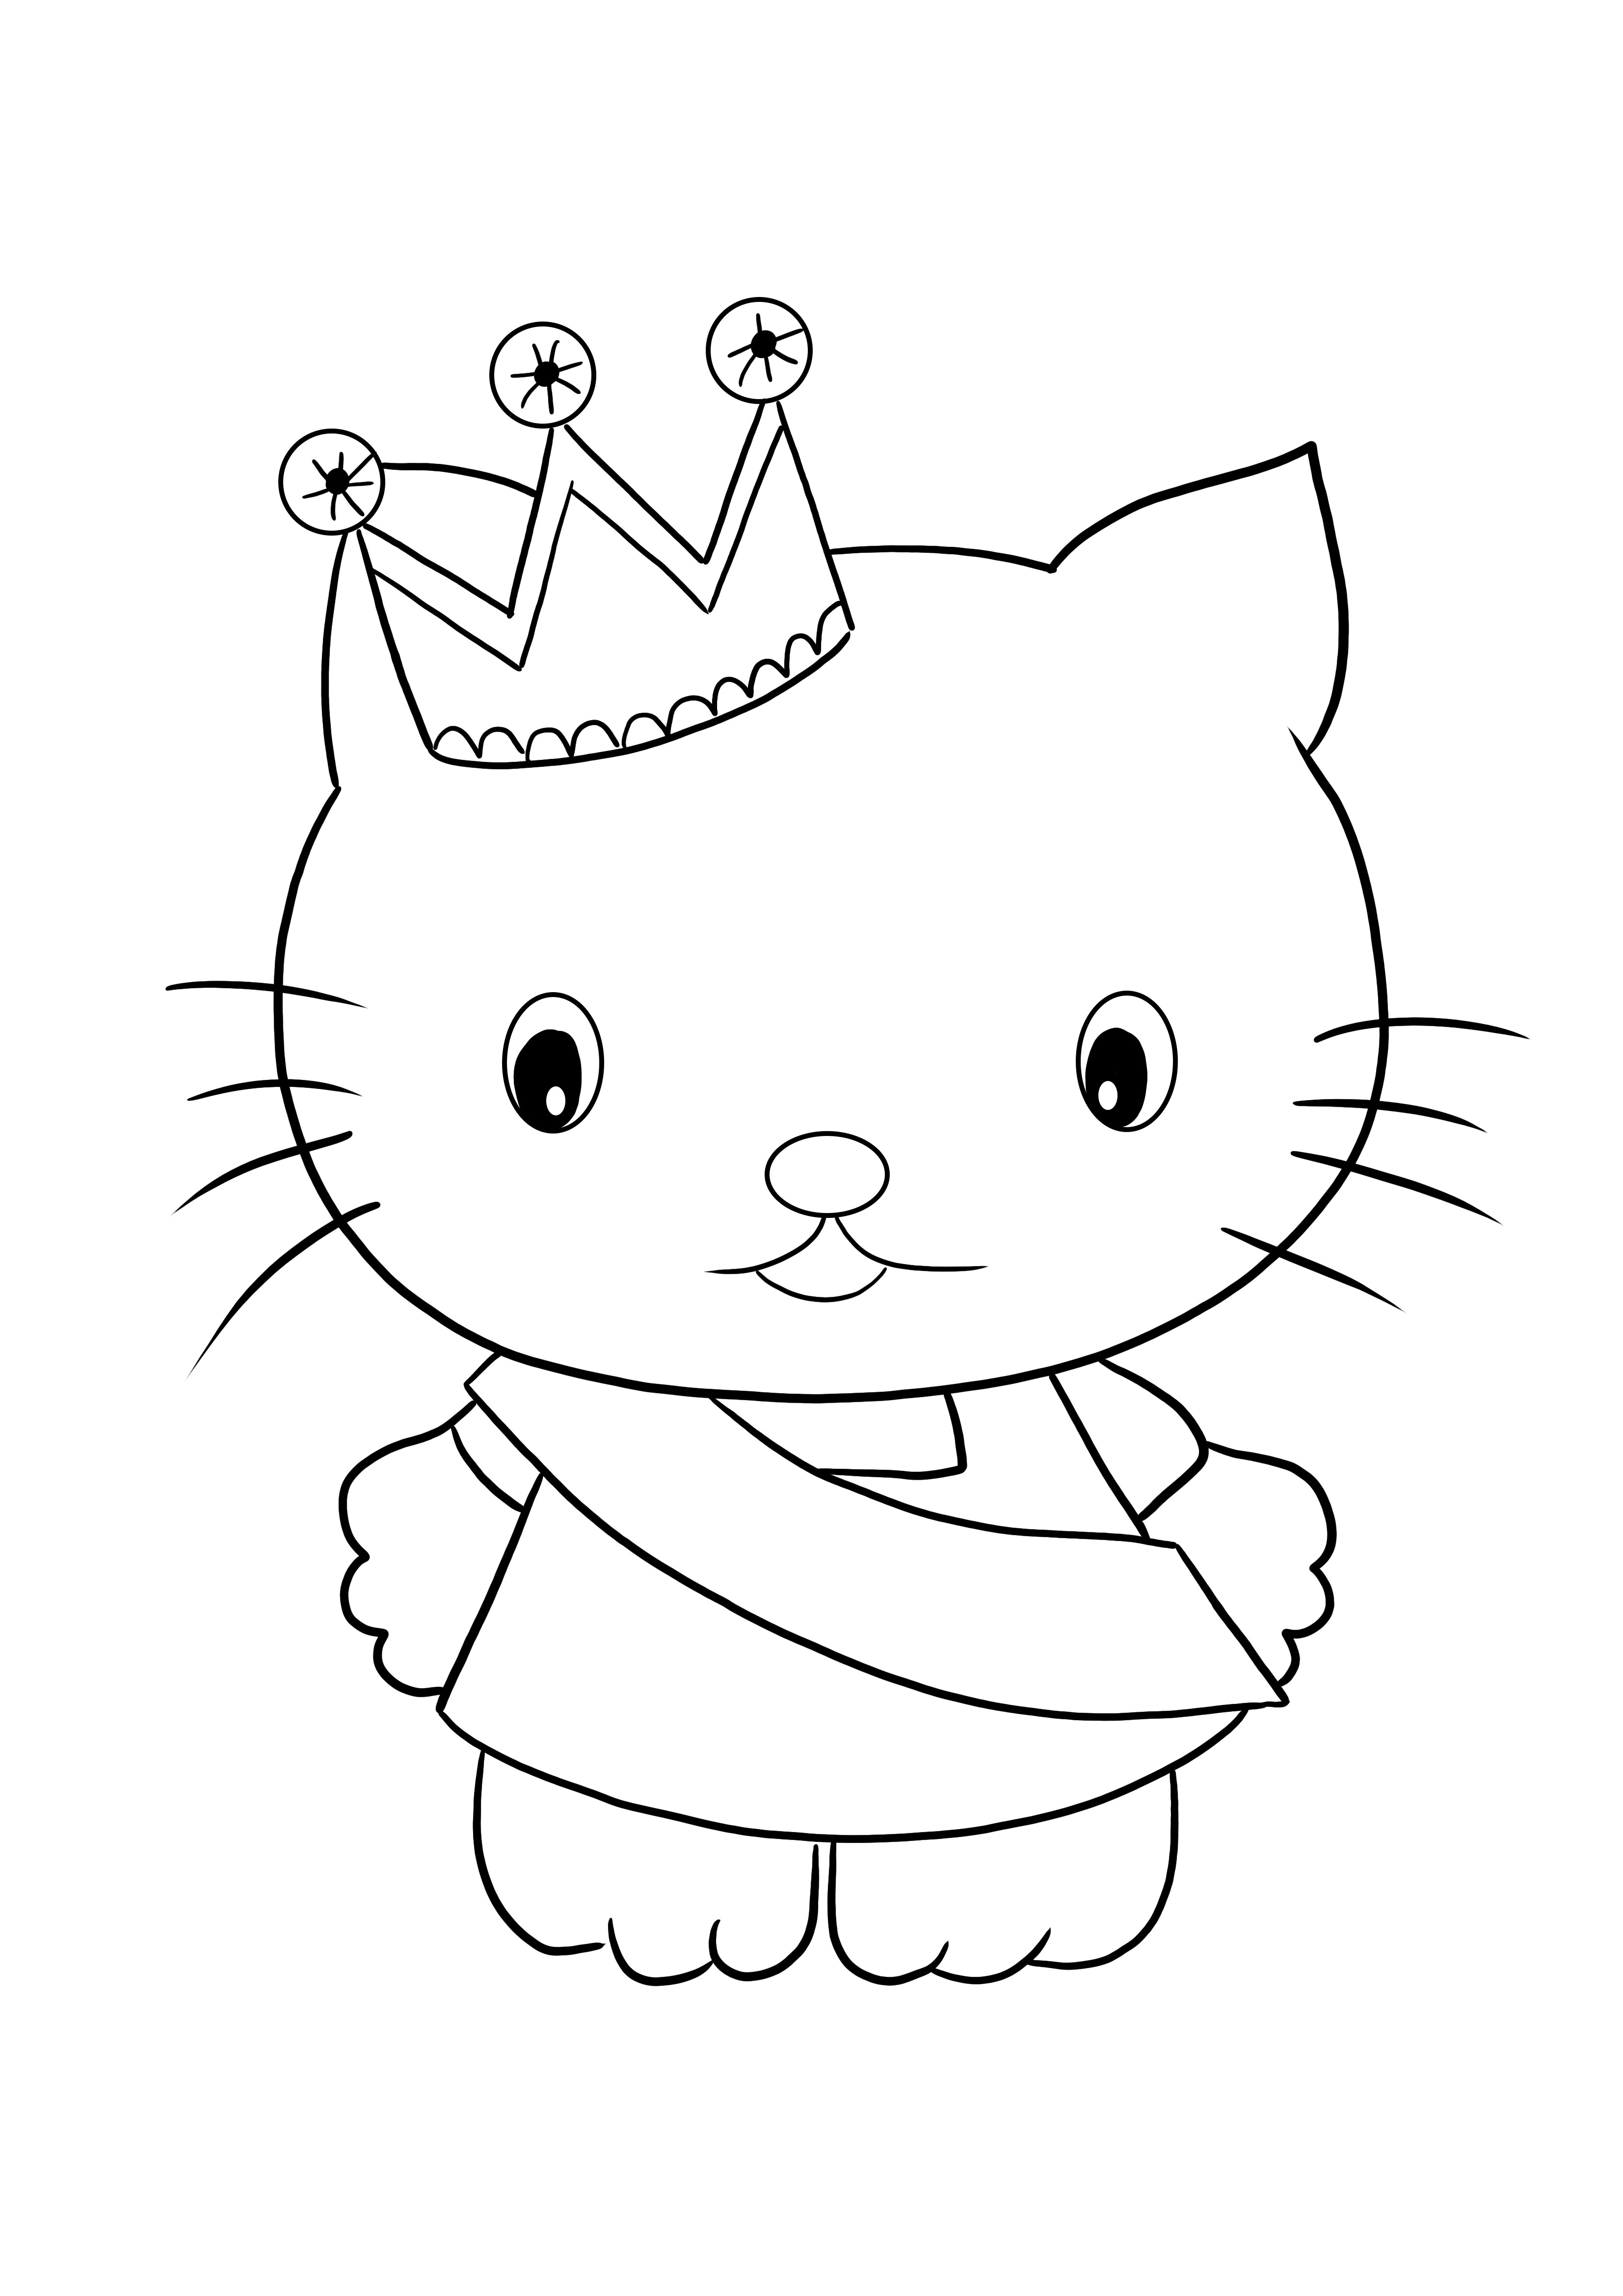 Impresión gratis de lámina para colorear de Hello Kitty Princesa para colorear y divertirte